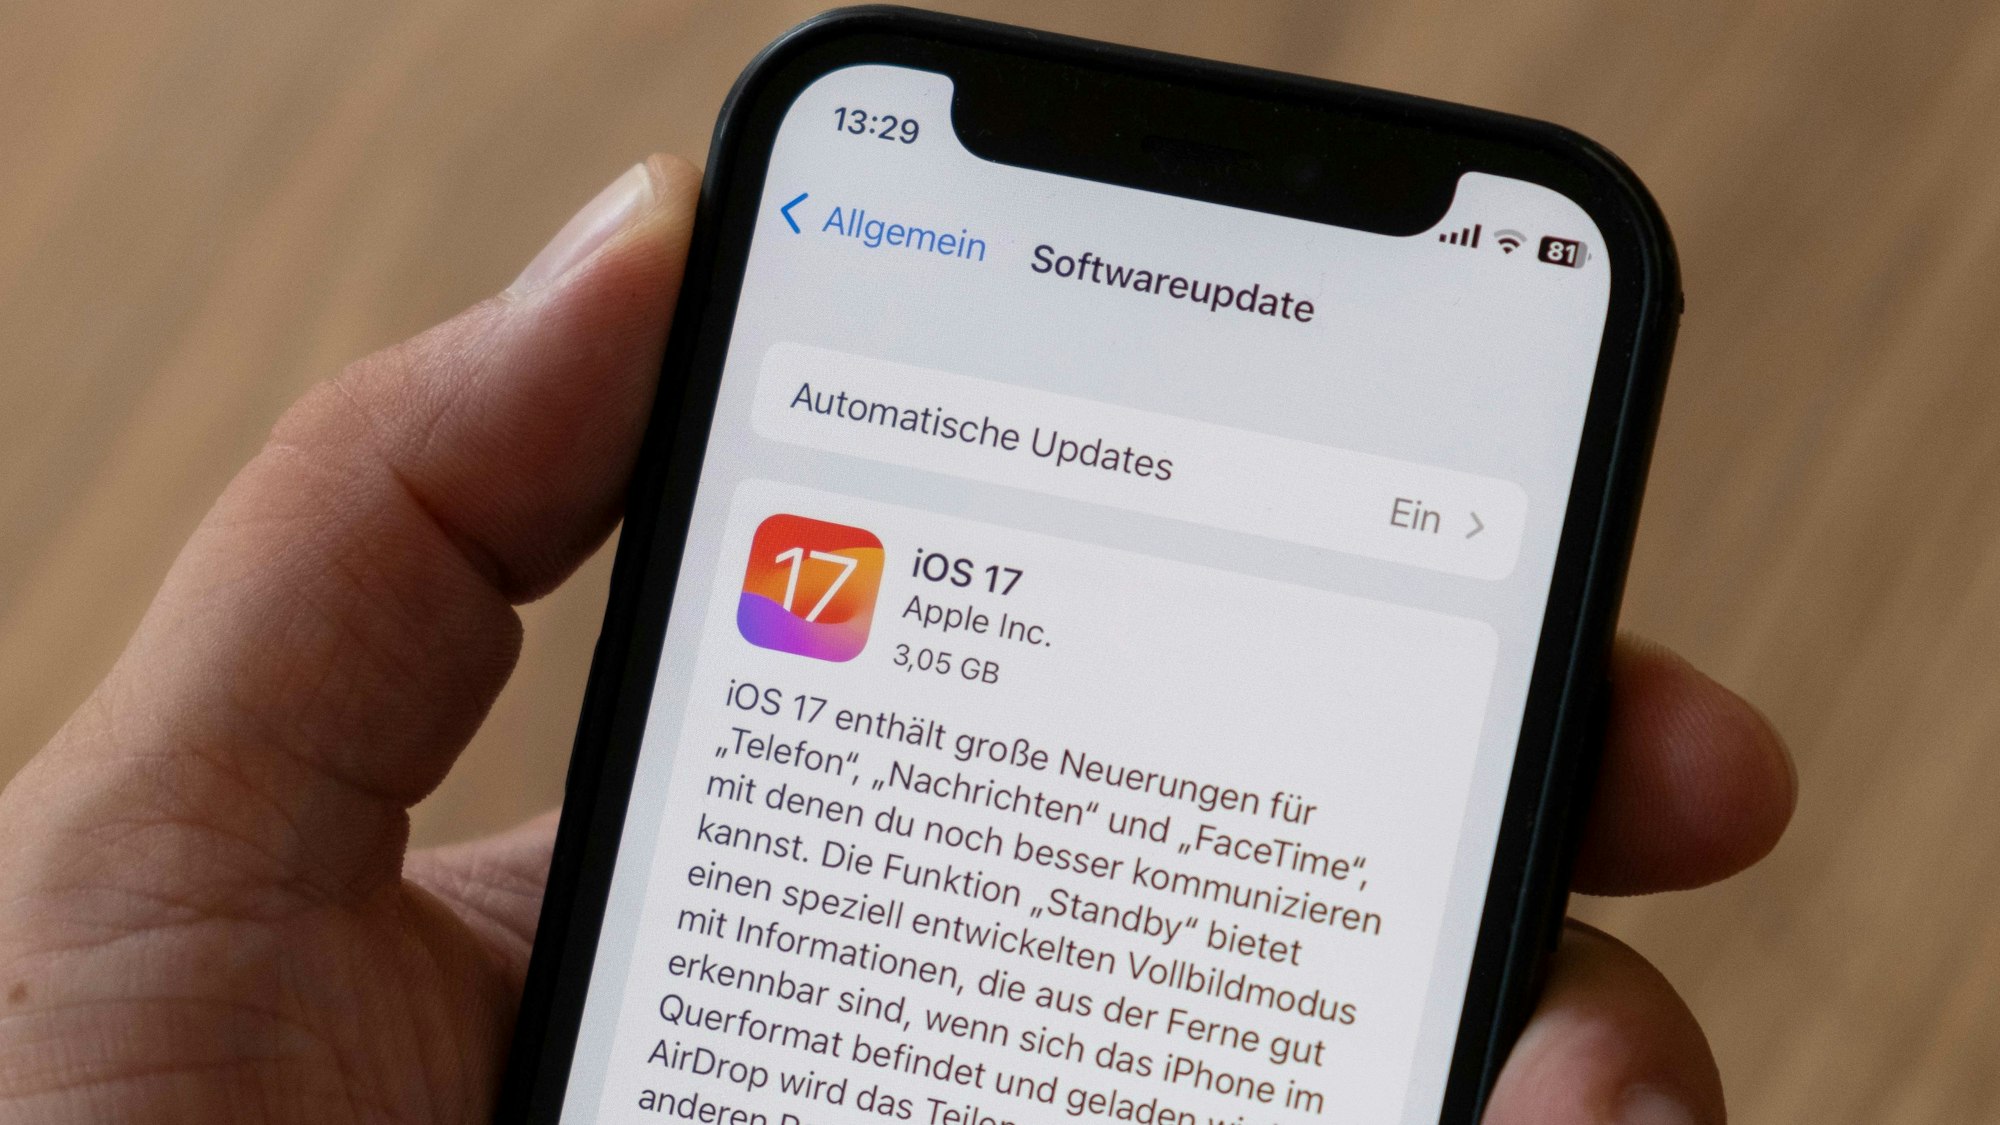 Eine Hand hält ein iPhone, auf dem Bildschirm sieht man das Software-Update iOS 17.